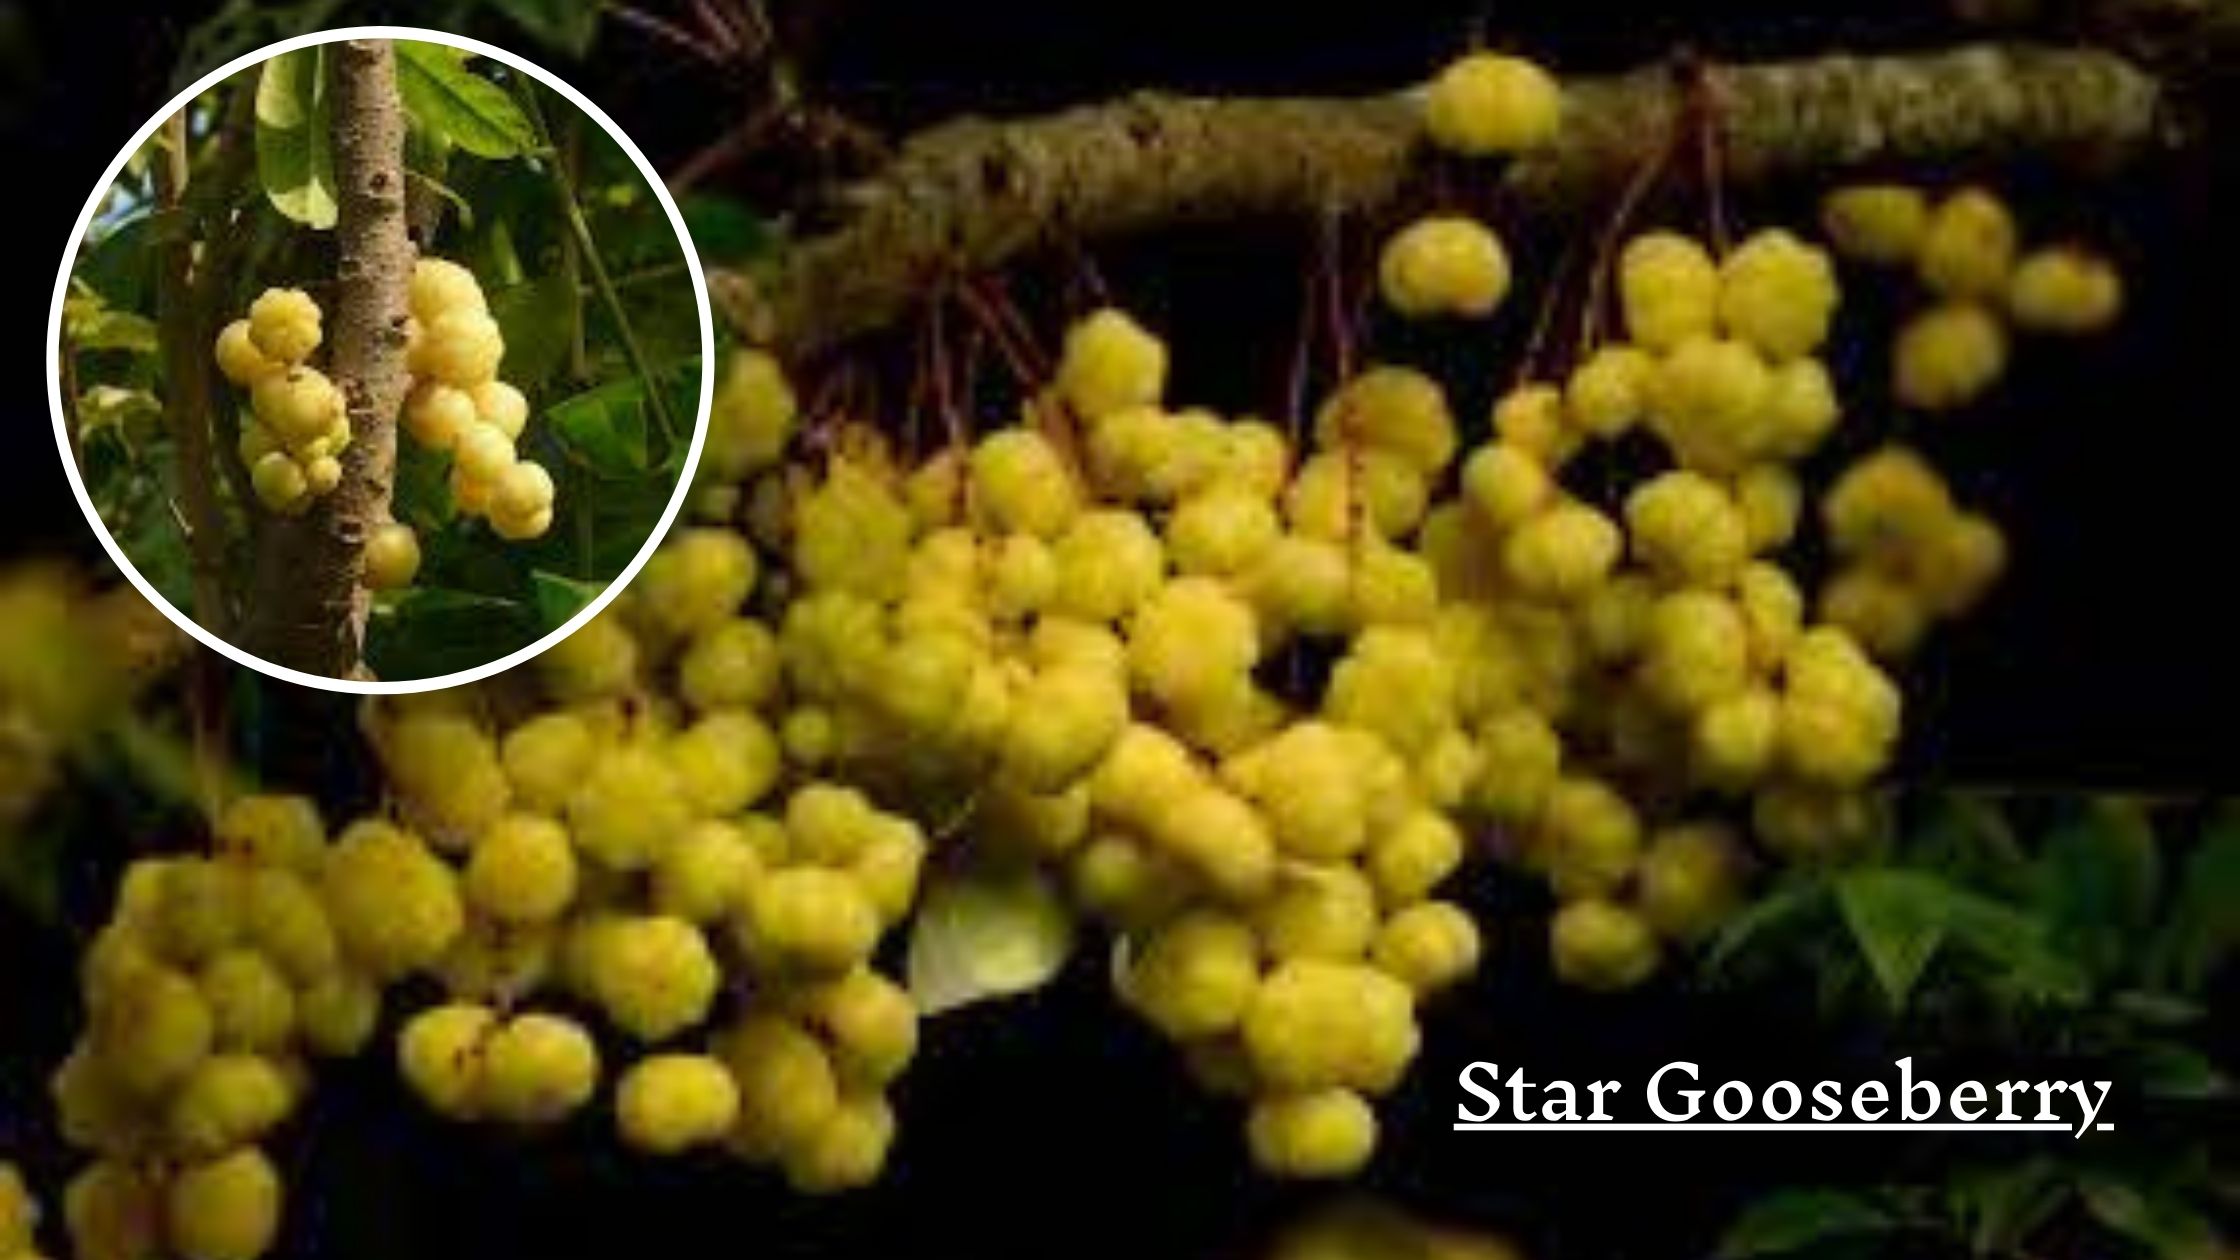 Star gooseberry